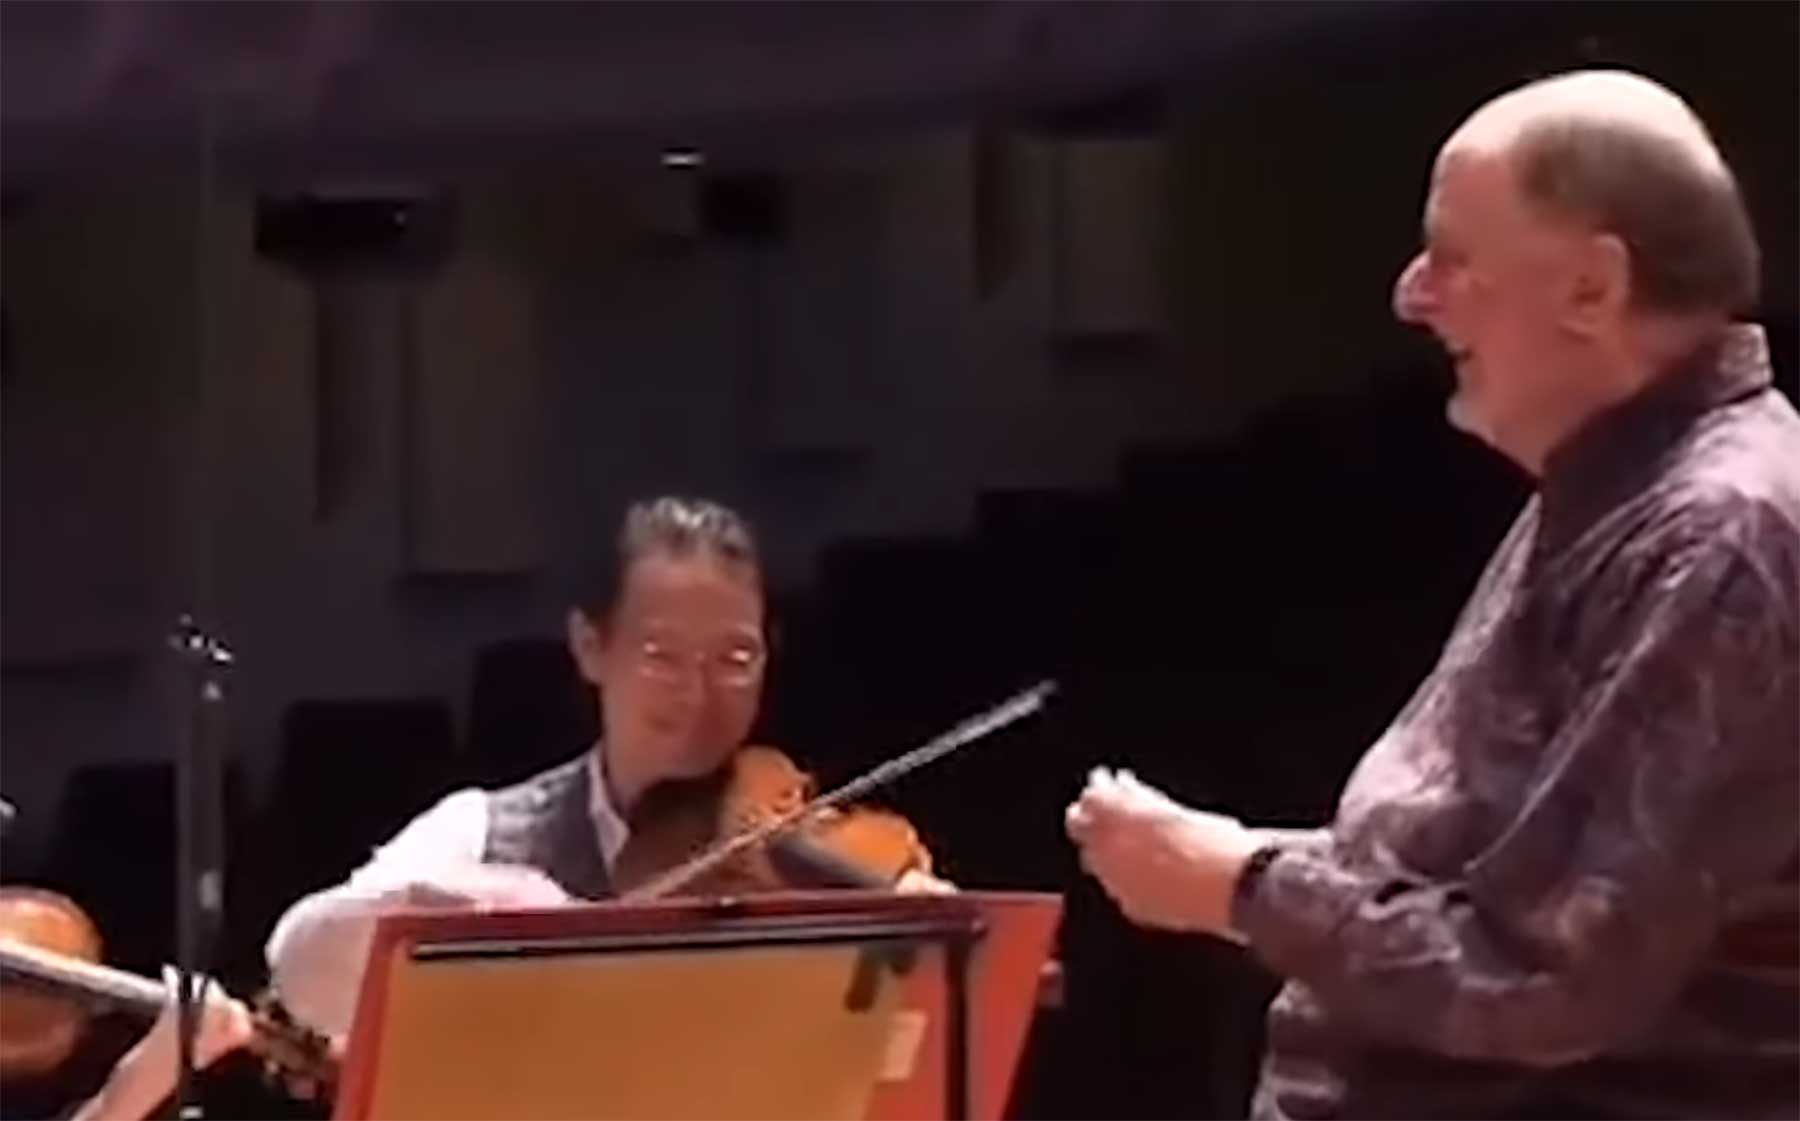 Orchester überraschen Dirigenten zum Geburtstag orchester-ueberraschen-dirigenten-am-geburstag 